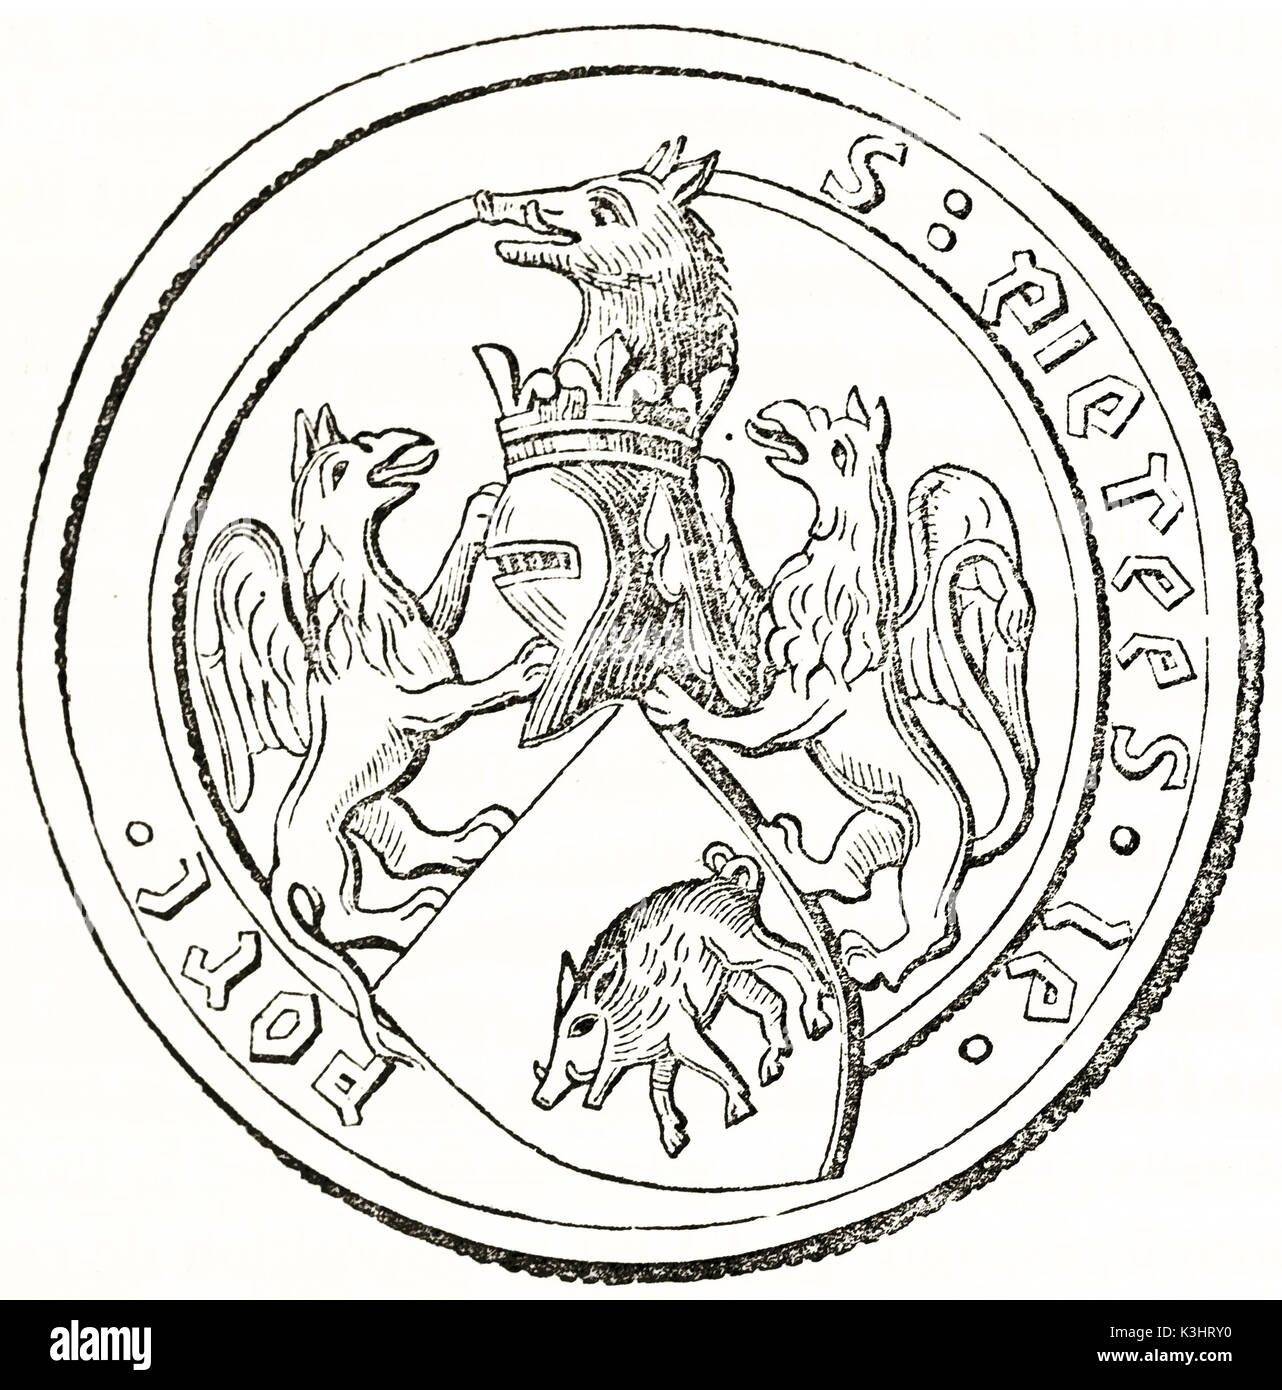 Alte graviert Reproduktion eines runden Wappen bestehend aus Wildschwein, Helm und hippogriffs. Von unbekannter Autor, auf Magasin Pittoresque, Paris, 1838 veröffentlicht. Stockfoto